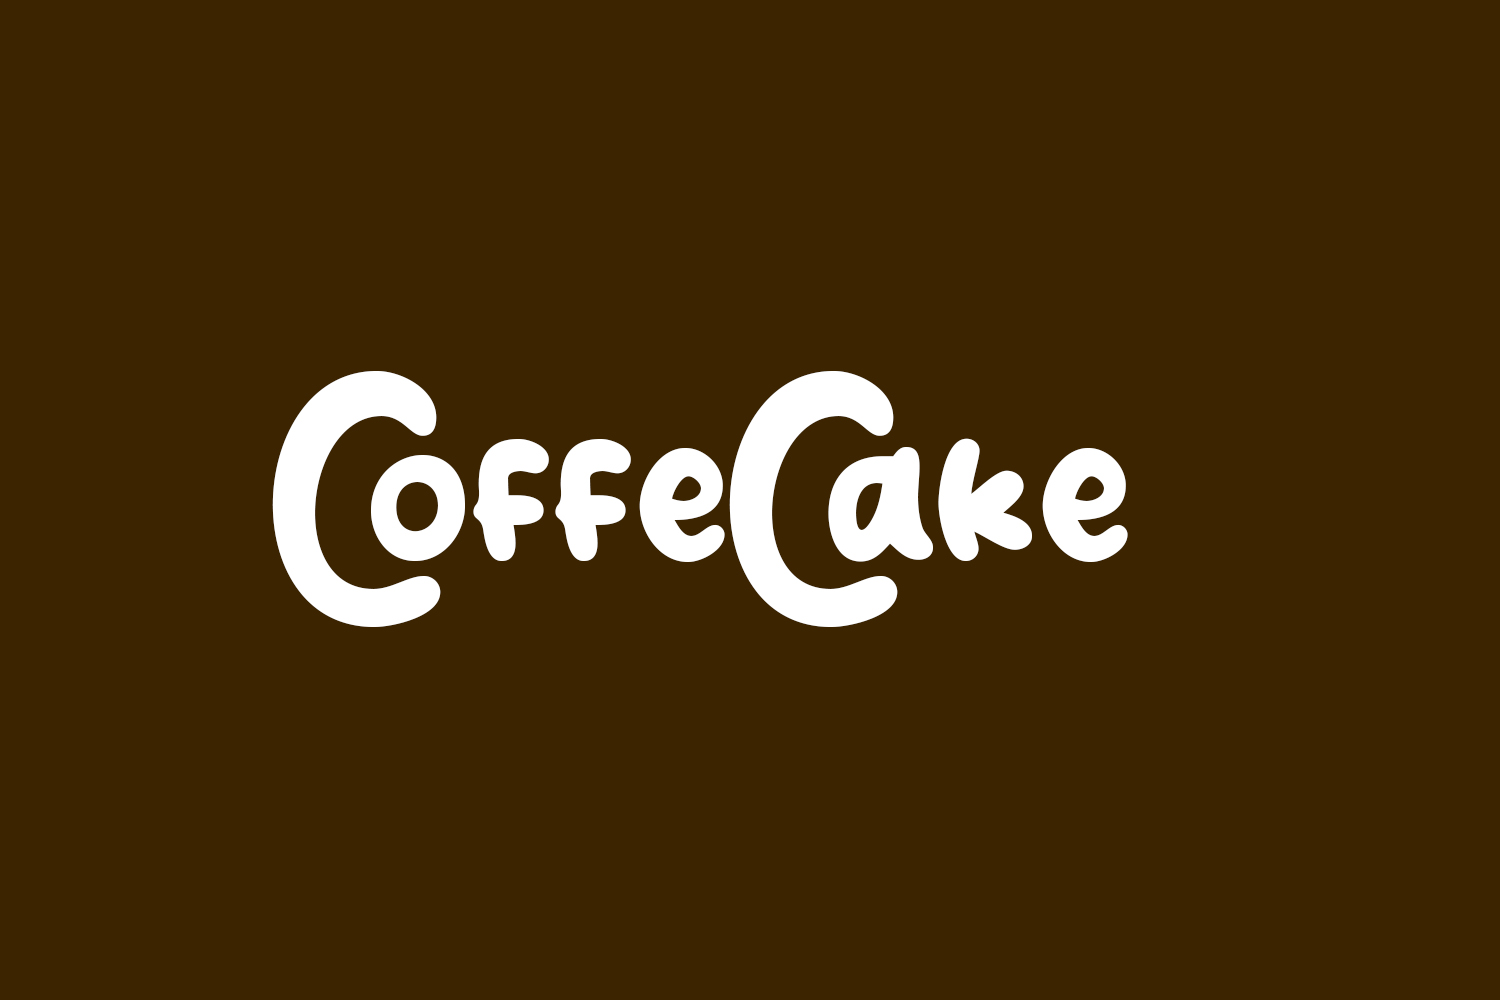 CoffeCake Free Font